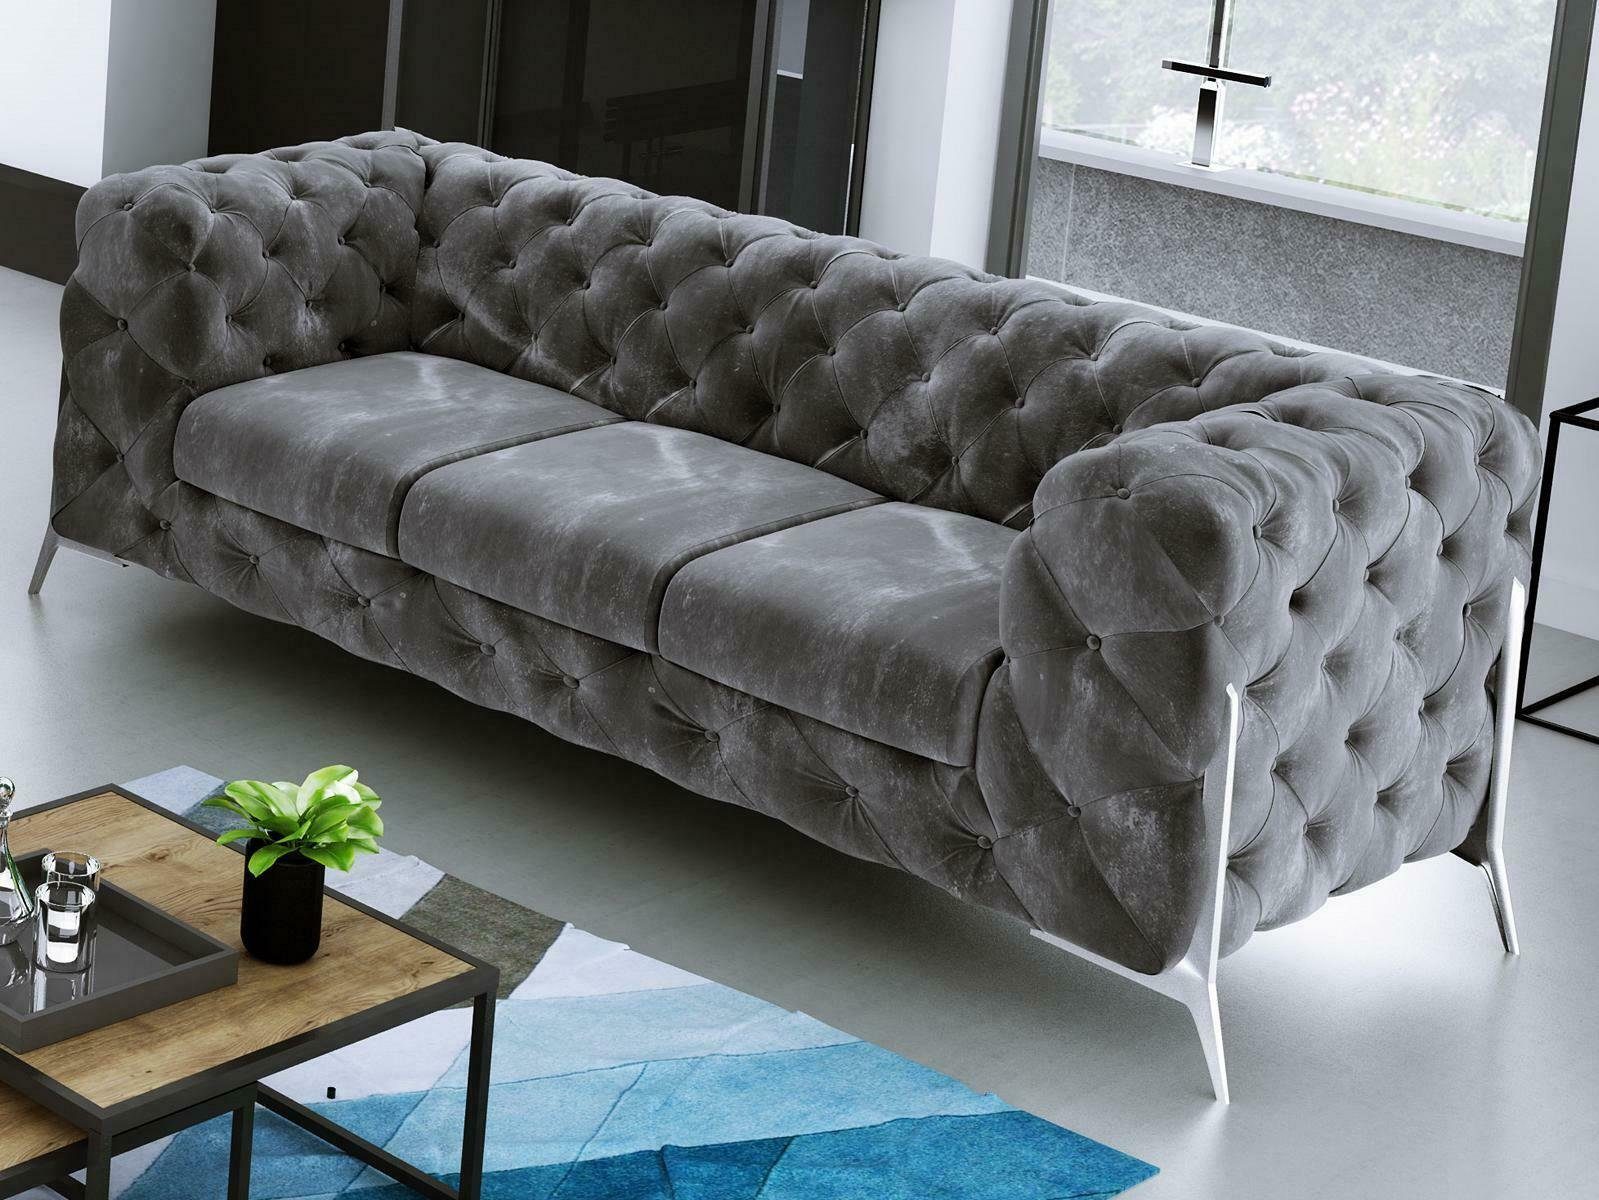 JVmoebel Sofa Moderner Brauner Chesterfield Dreisitzer Luxus Polster Couch Neu, Made in Europe Schwarz